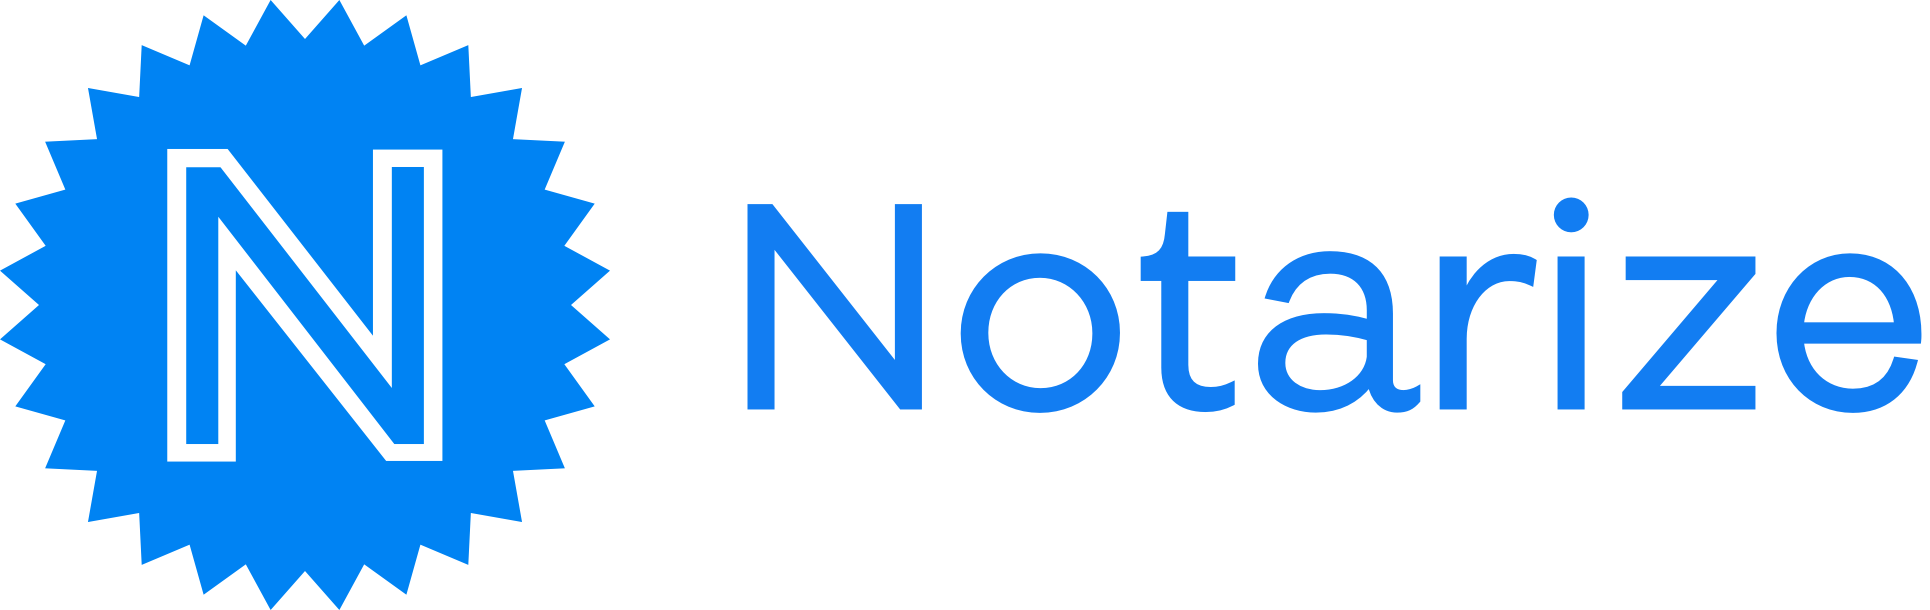 Notarize logo